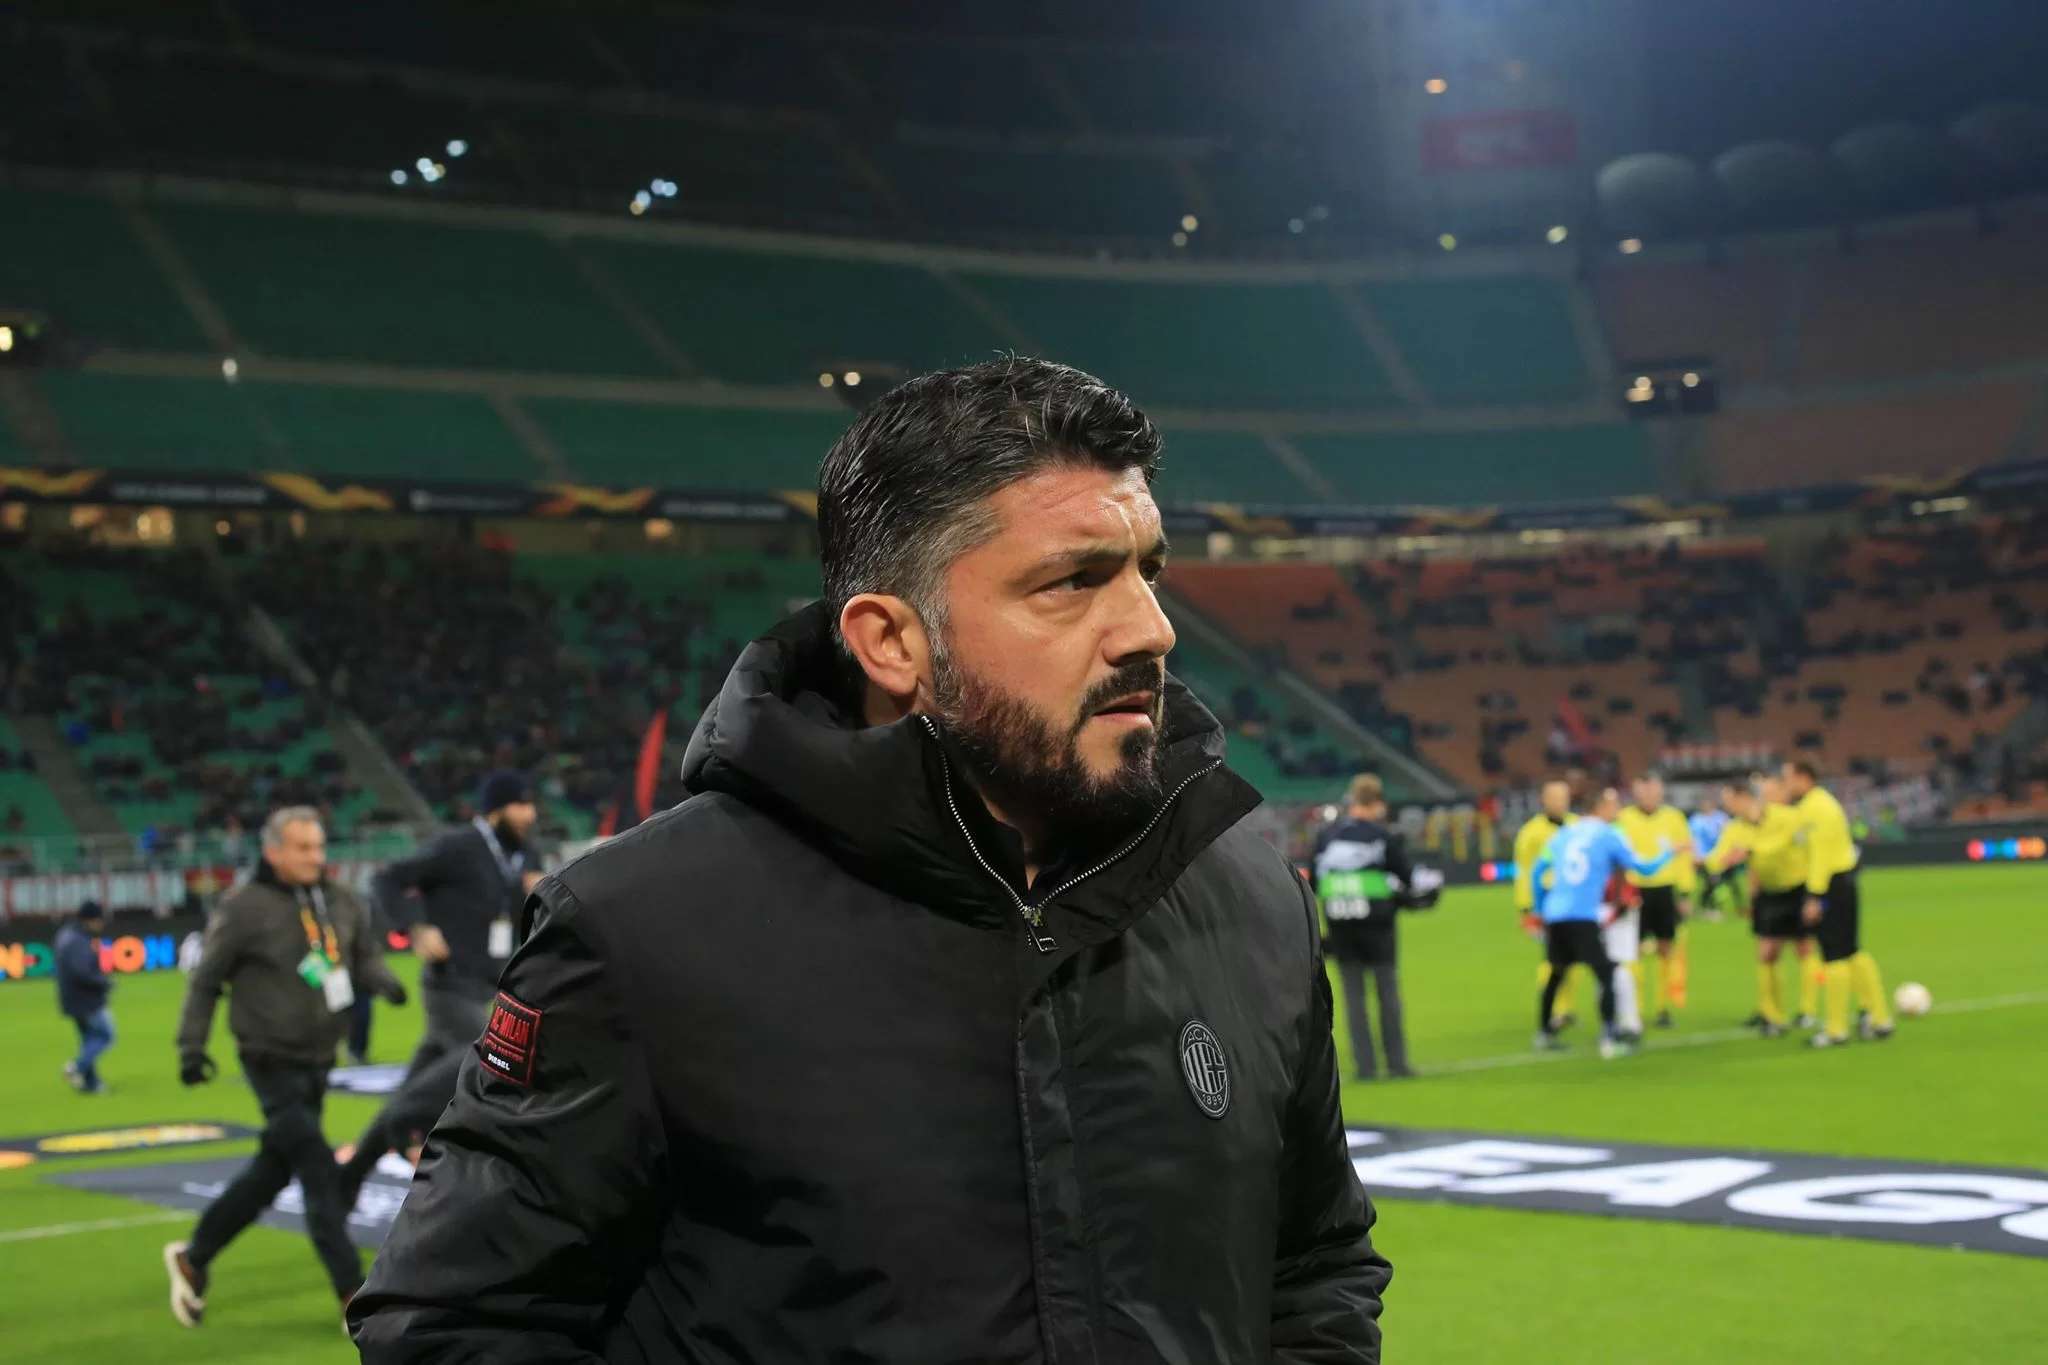 L’ascesa silenziosa del Milan, punto dopo punto, spalanca le porte della Champions